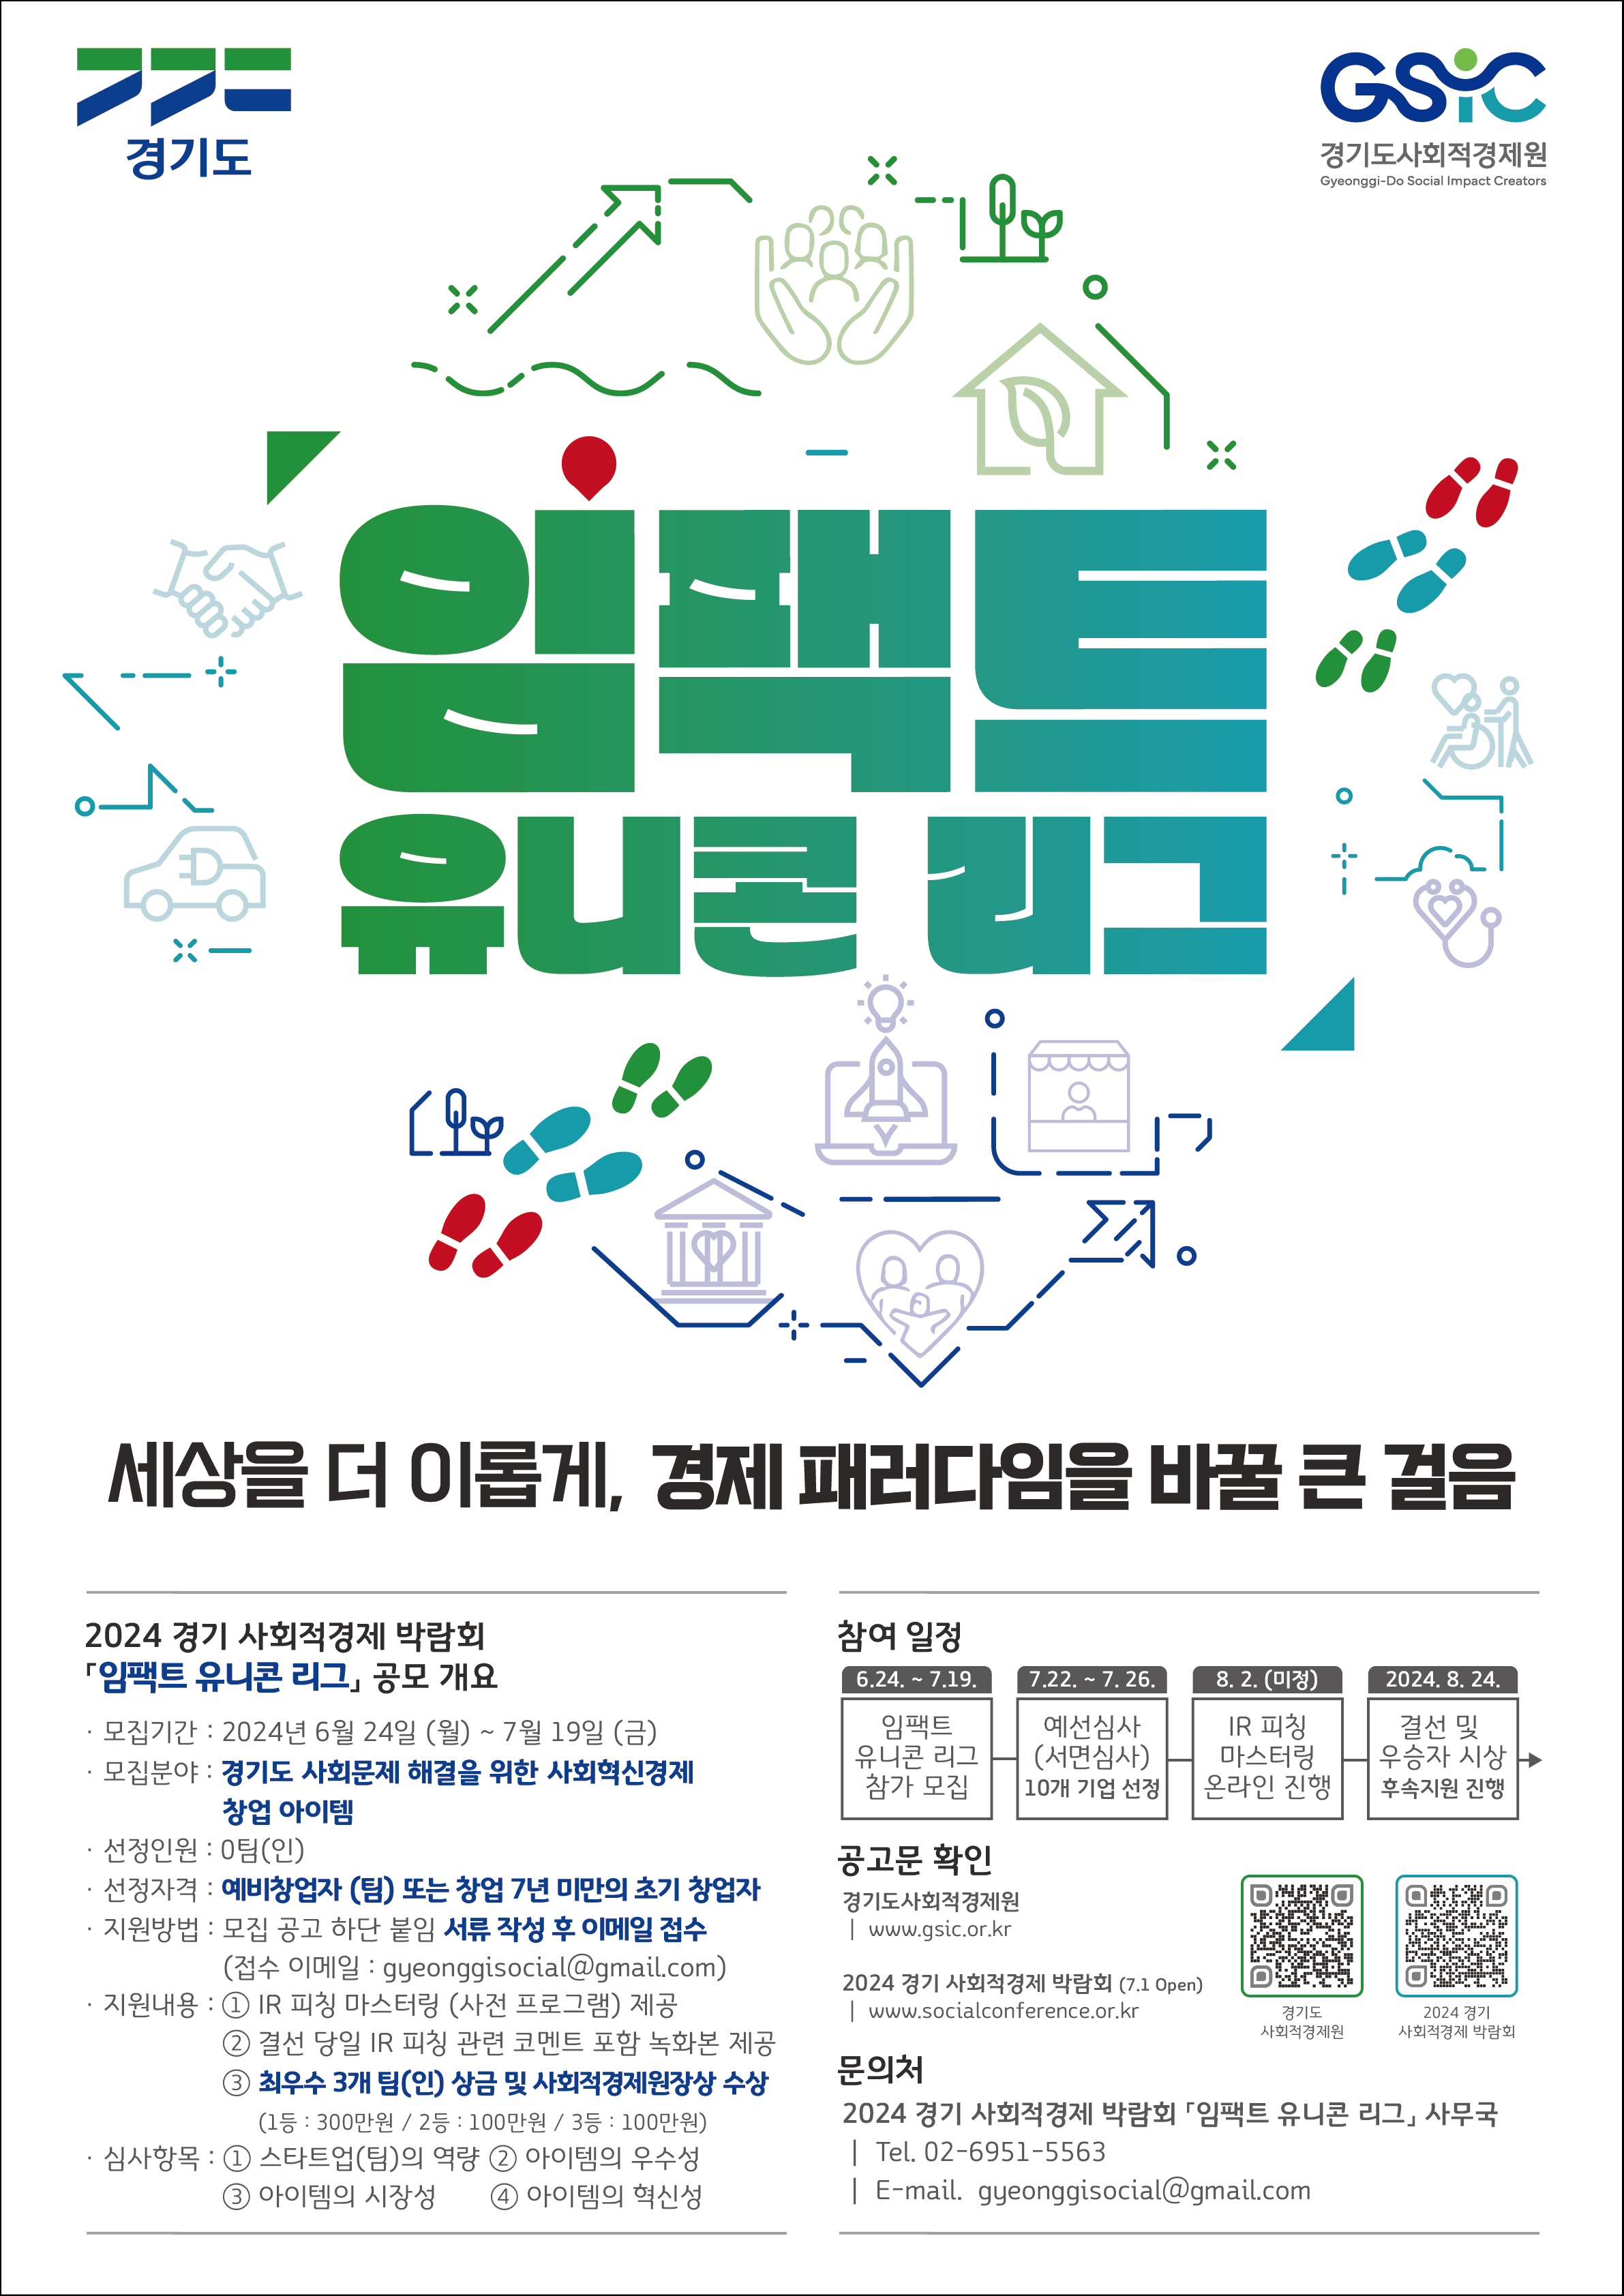 2024 경기 사회적경제 박람회 '임팩트 유니콘 리그' 모집 공고